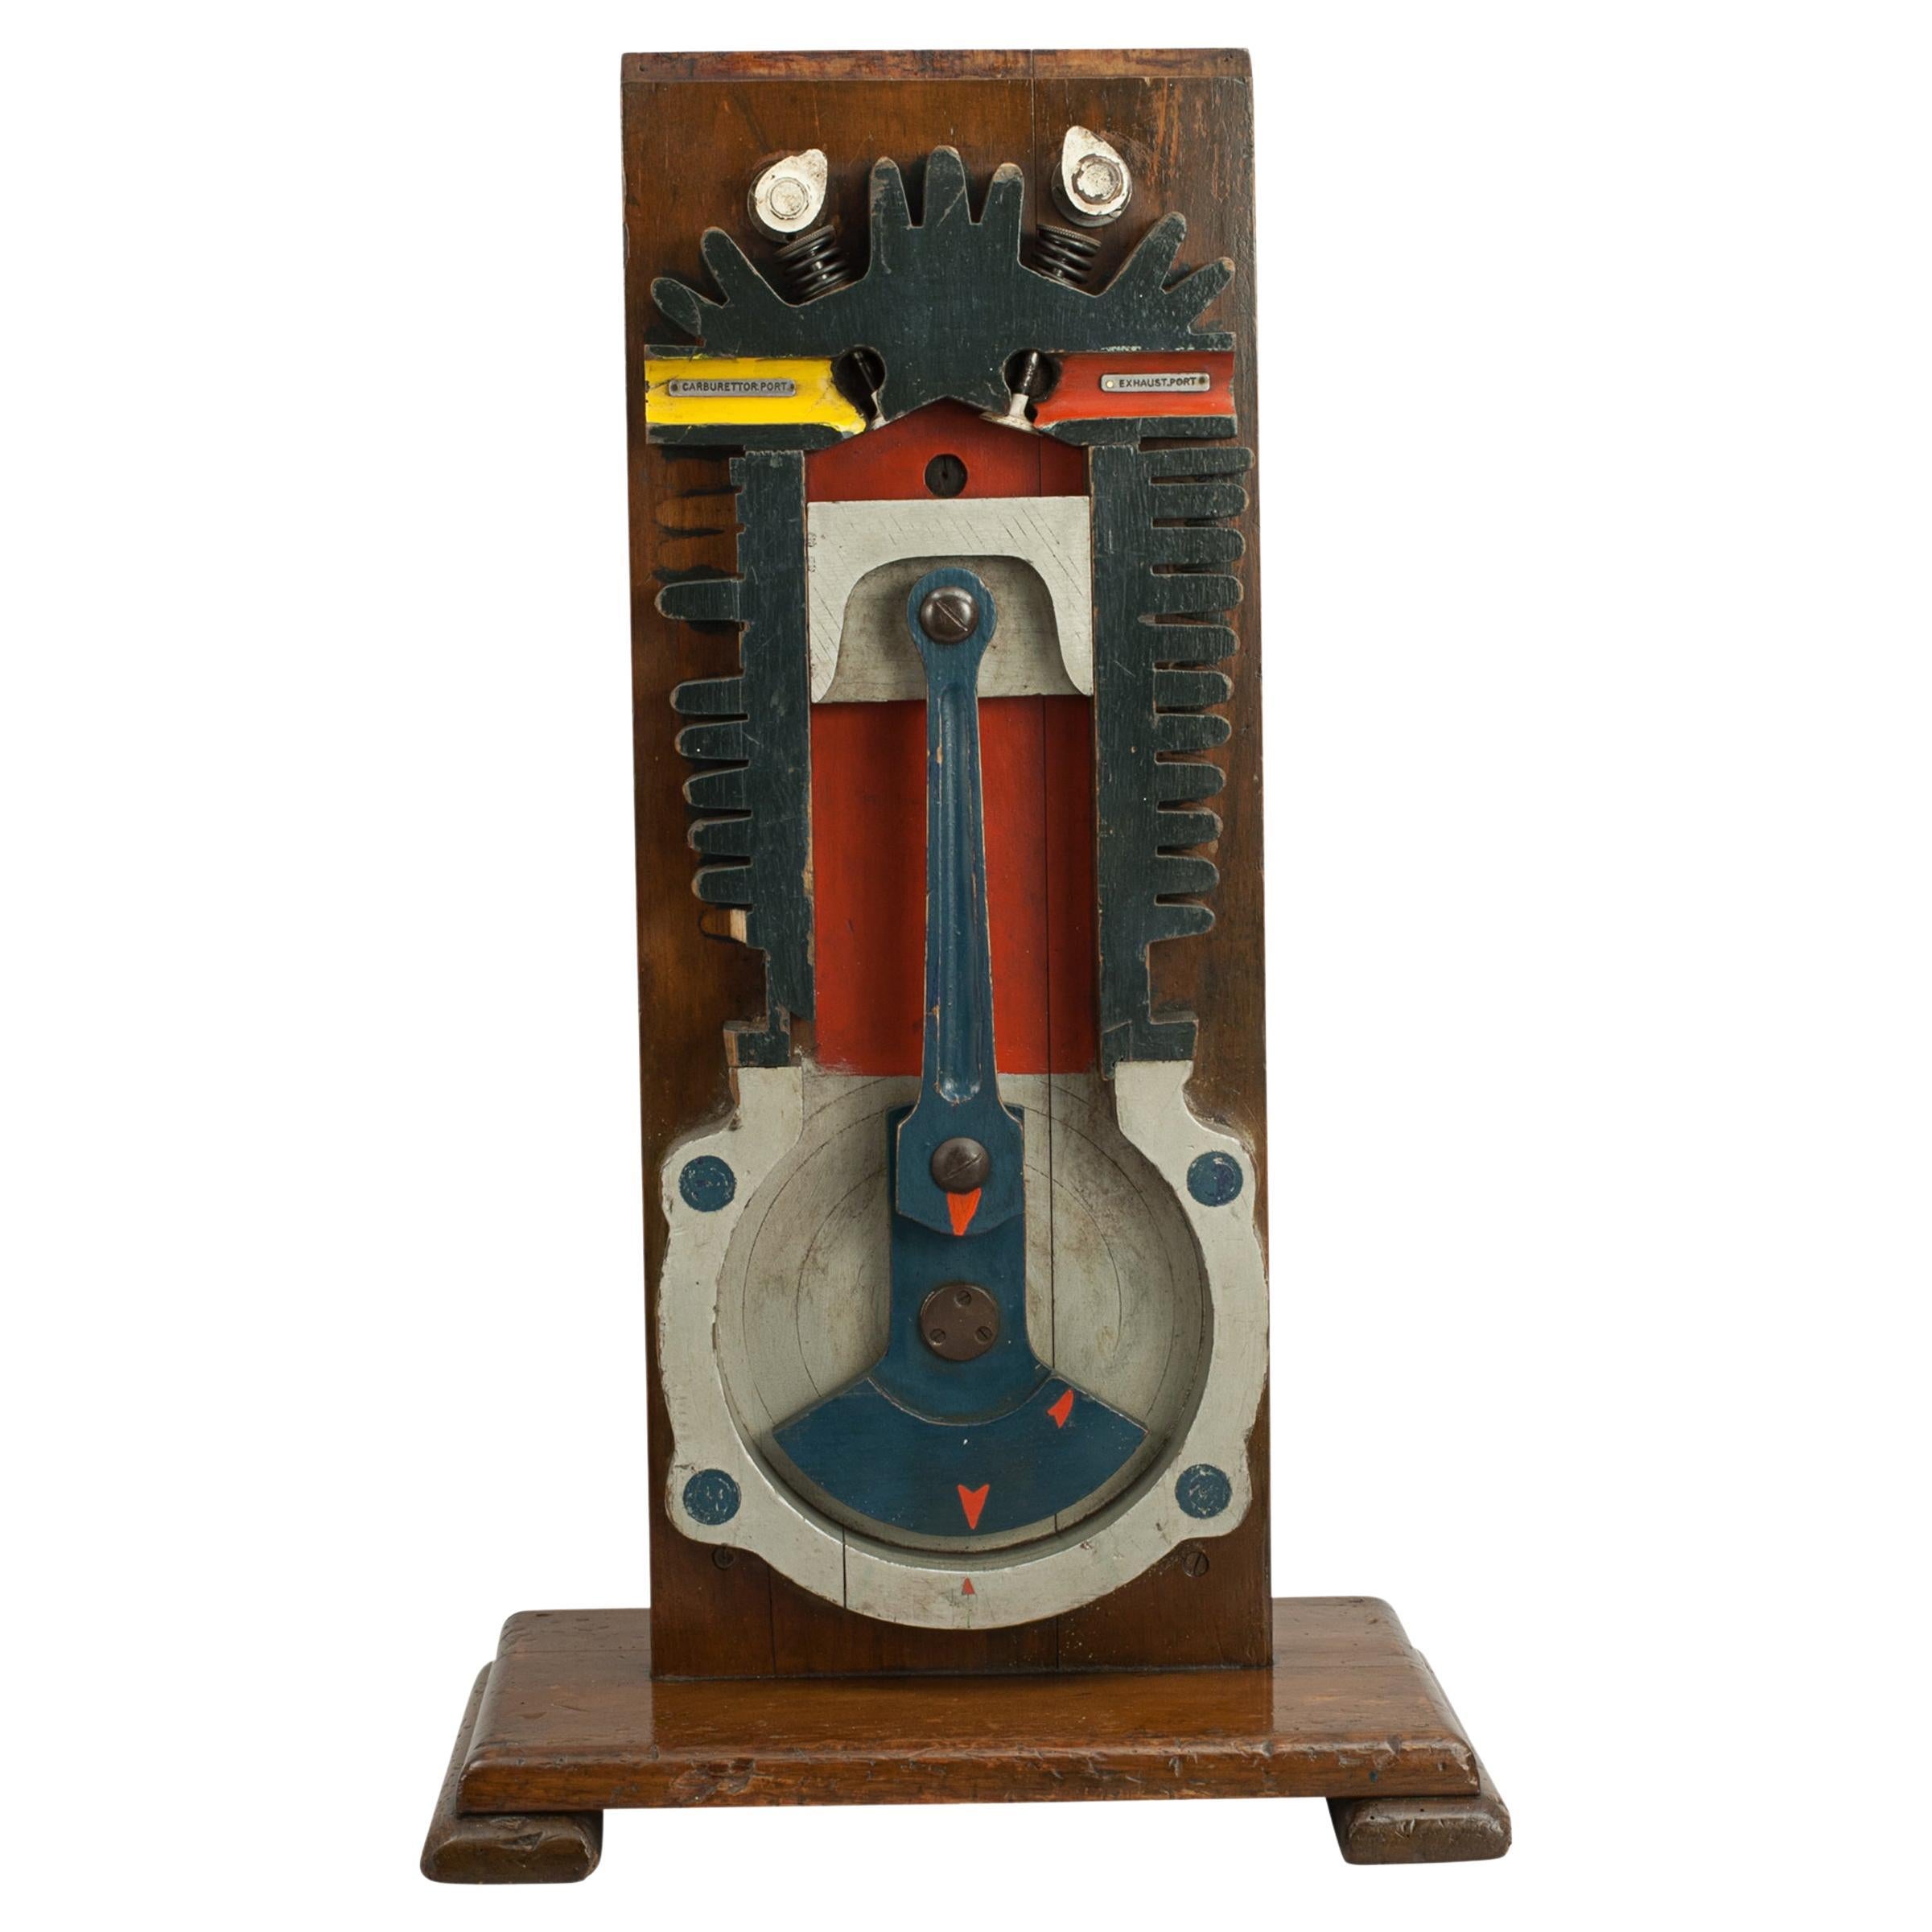 Vintage Engine Model for Instructional Purpose